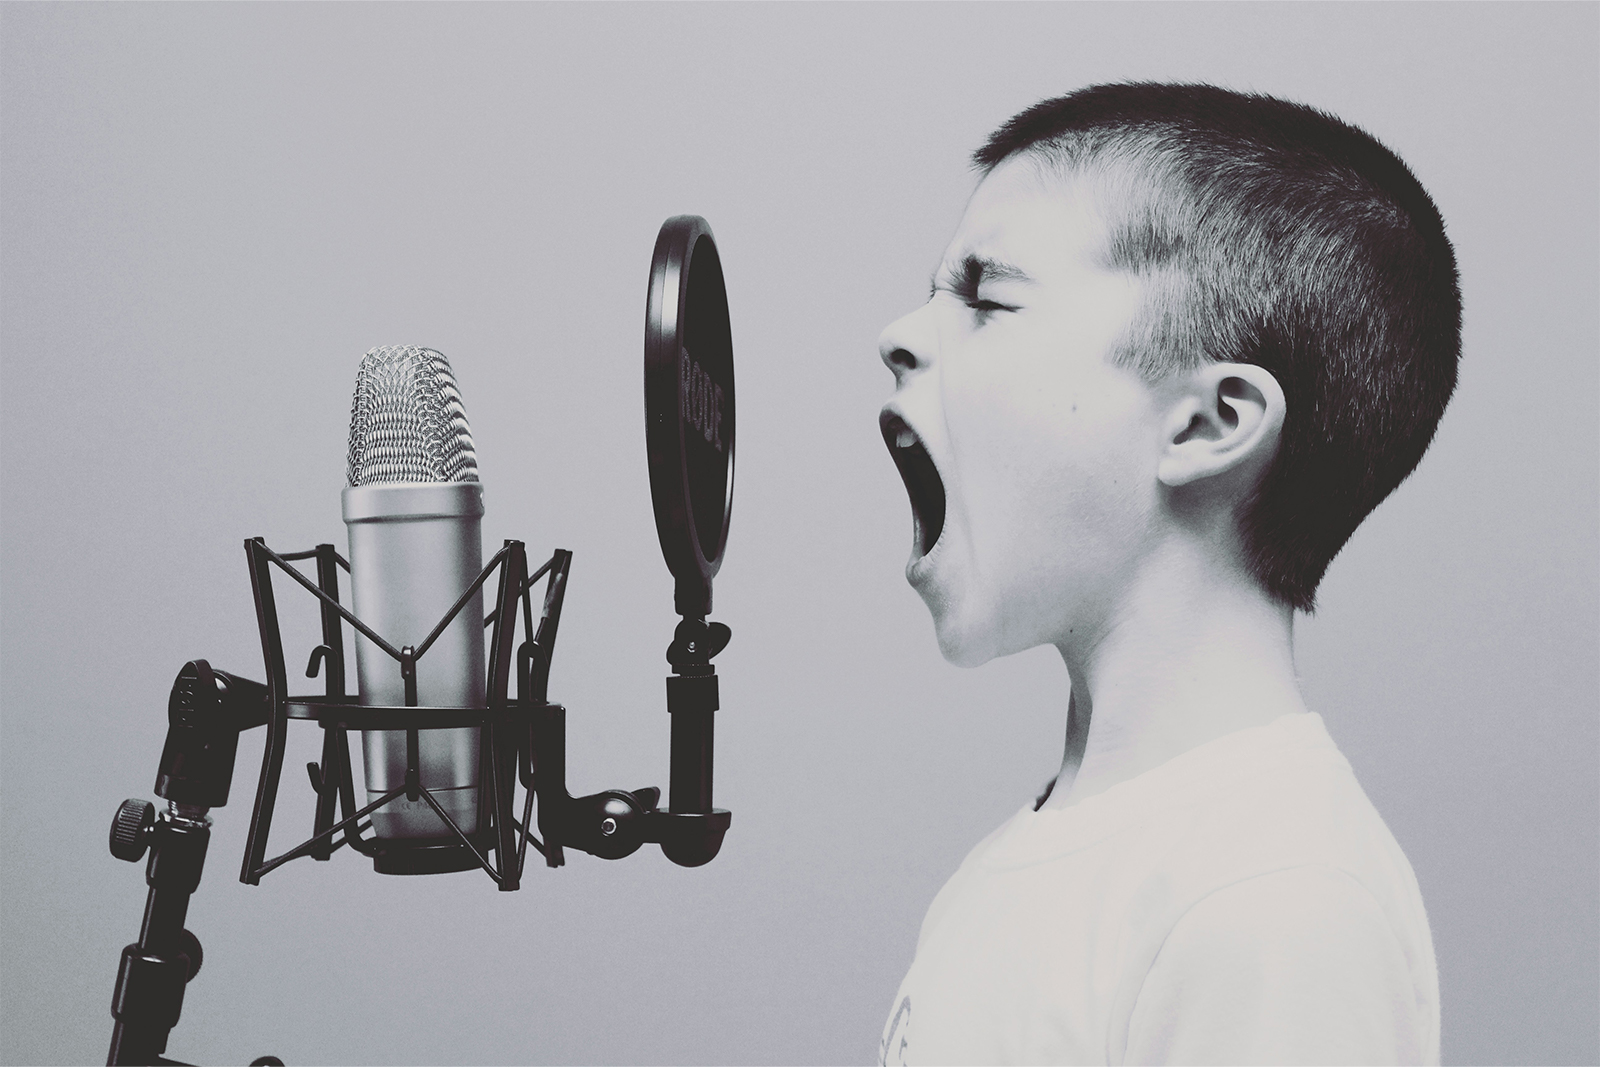 Ein Junge singt am Mikrofon.